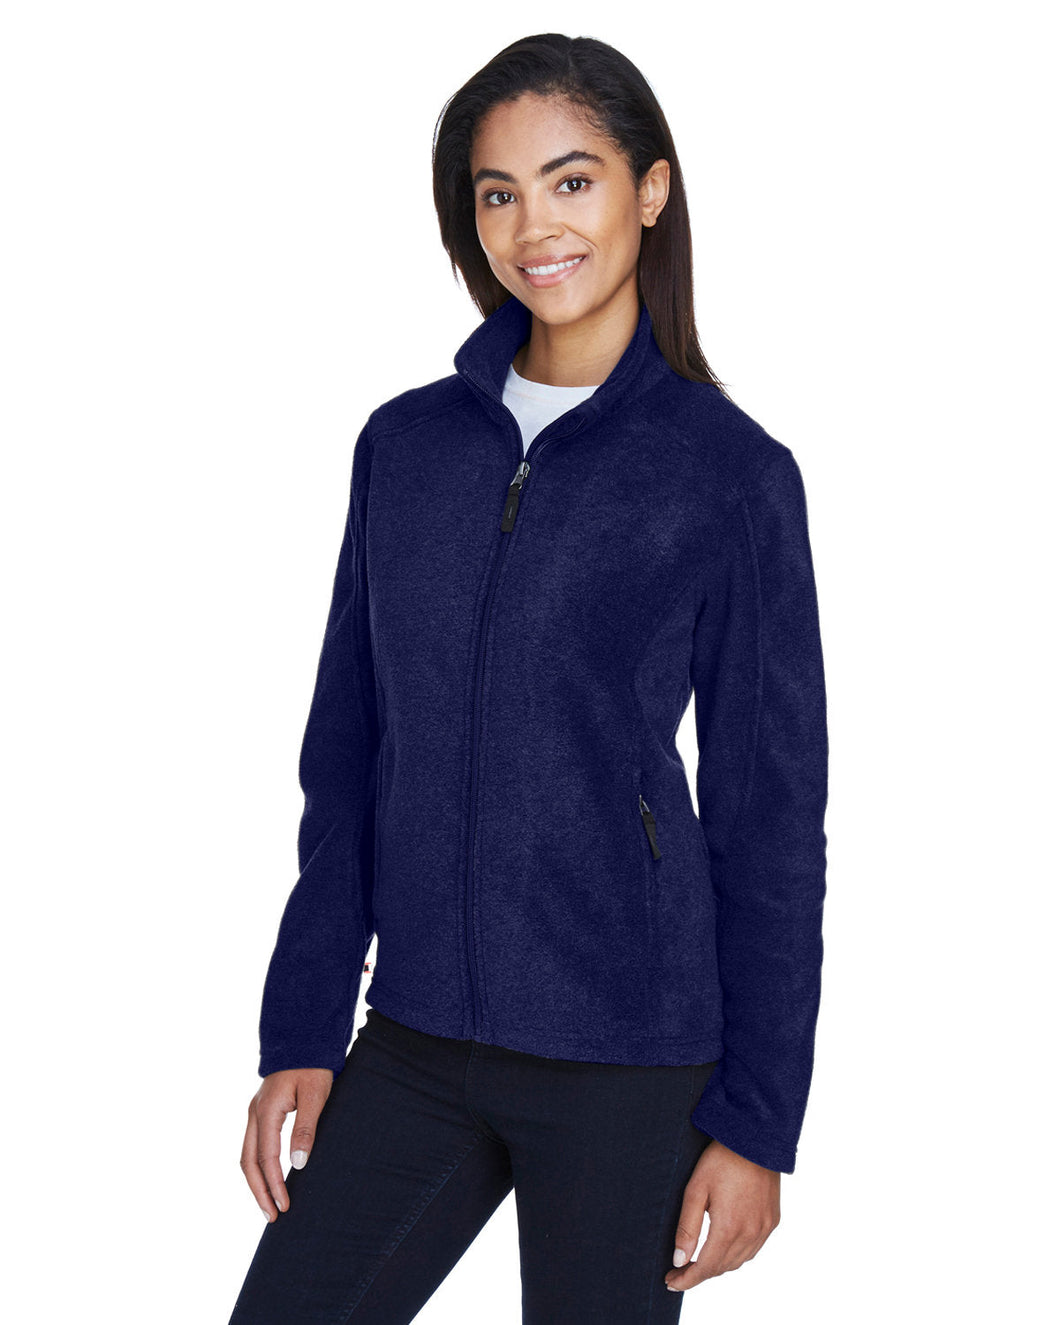 Women's NECC Sleep Tech Embroidered Fleece Jacket